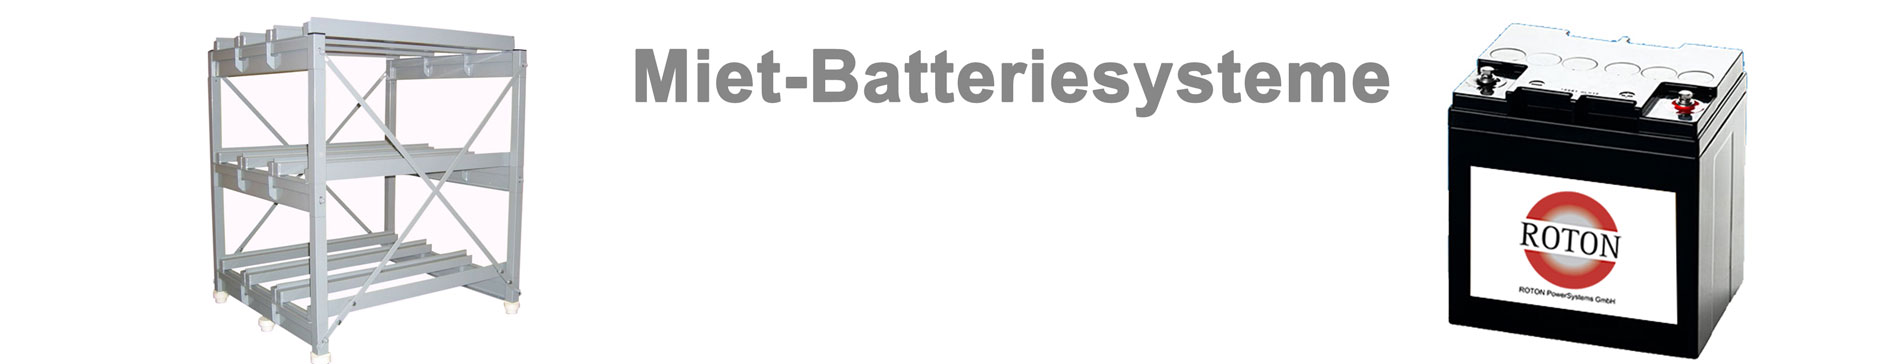 batteriesysteme header